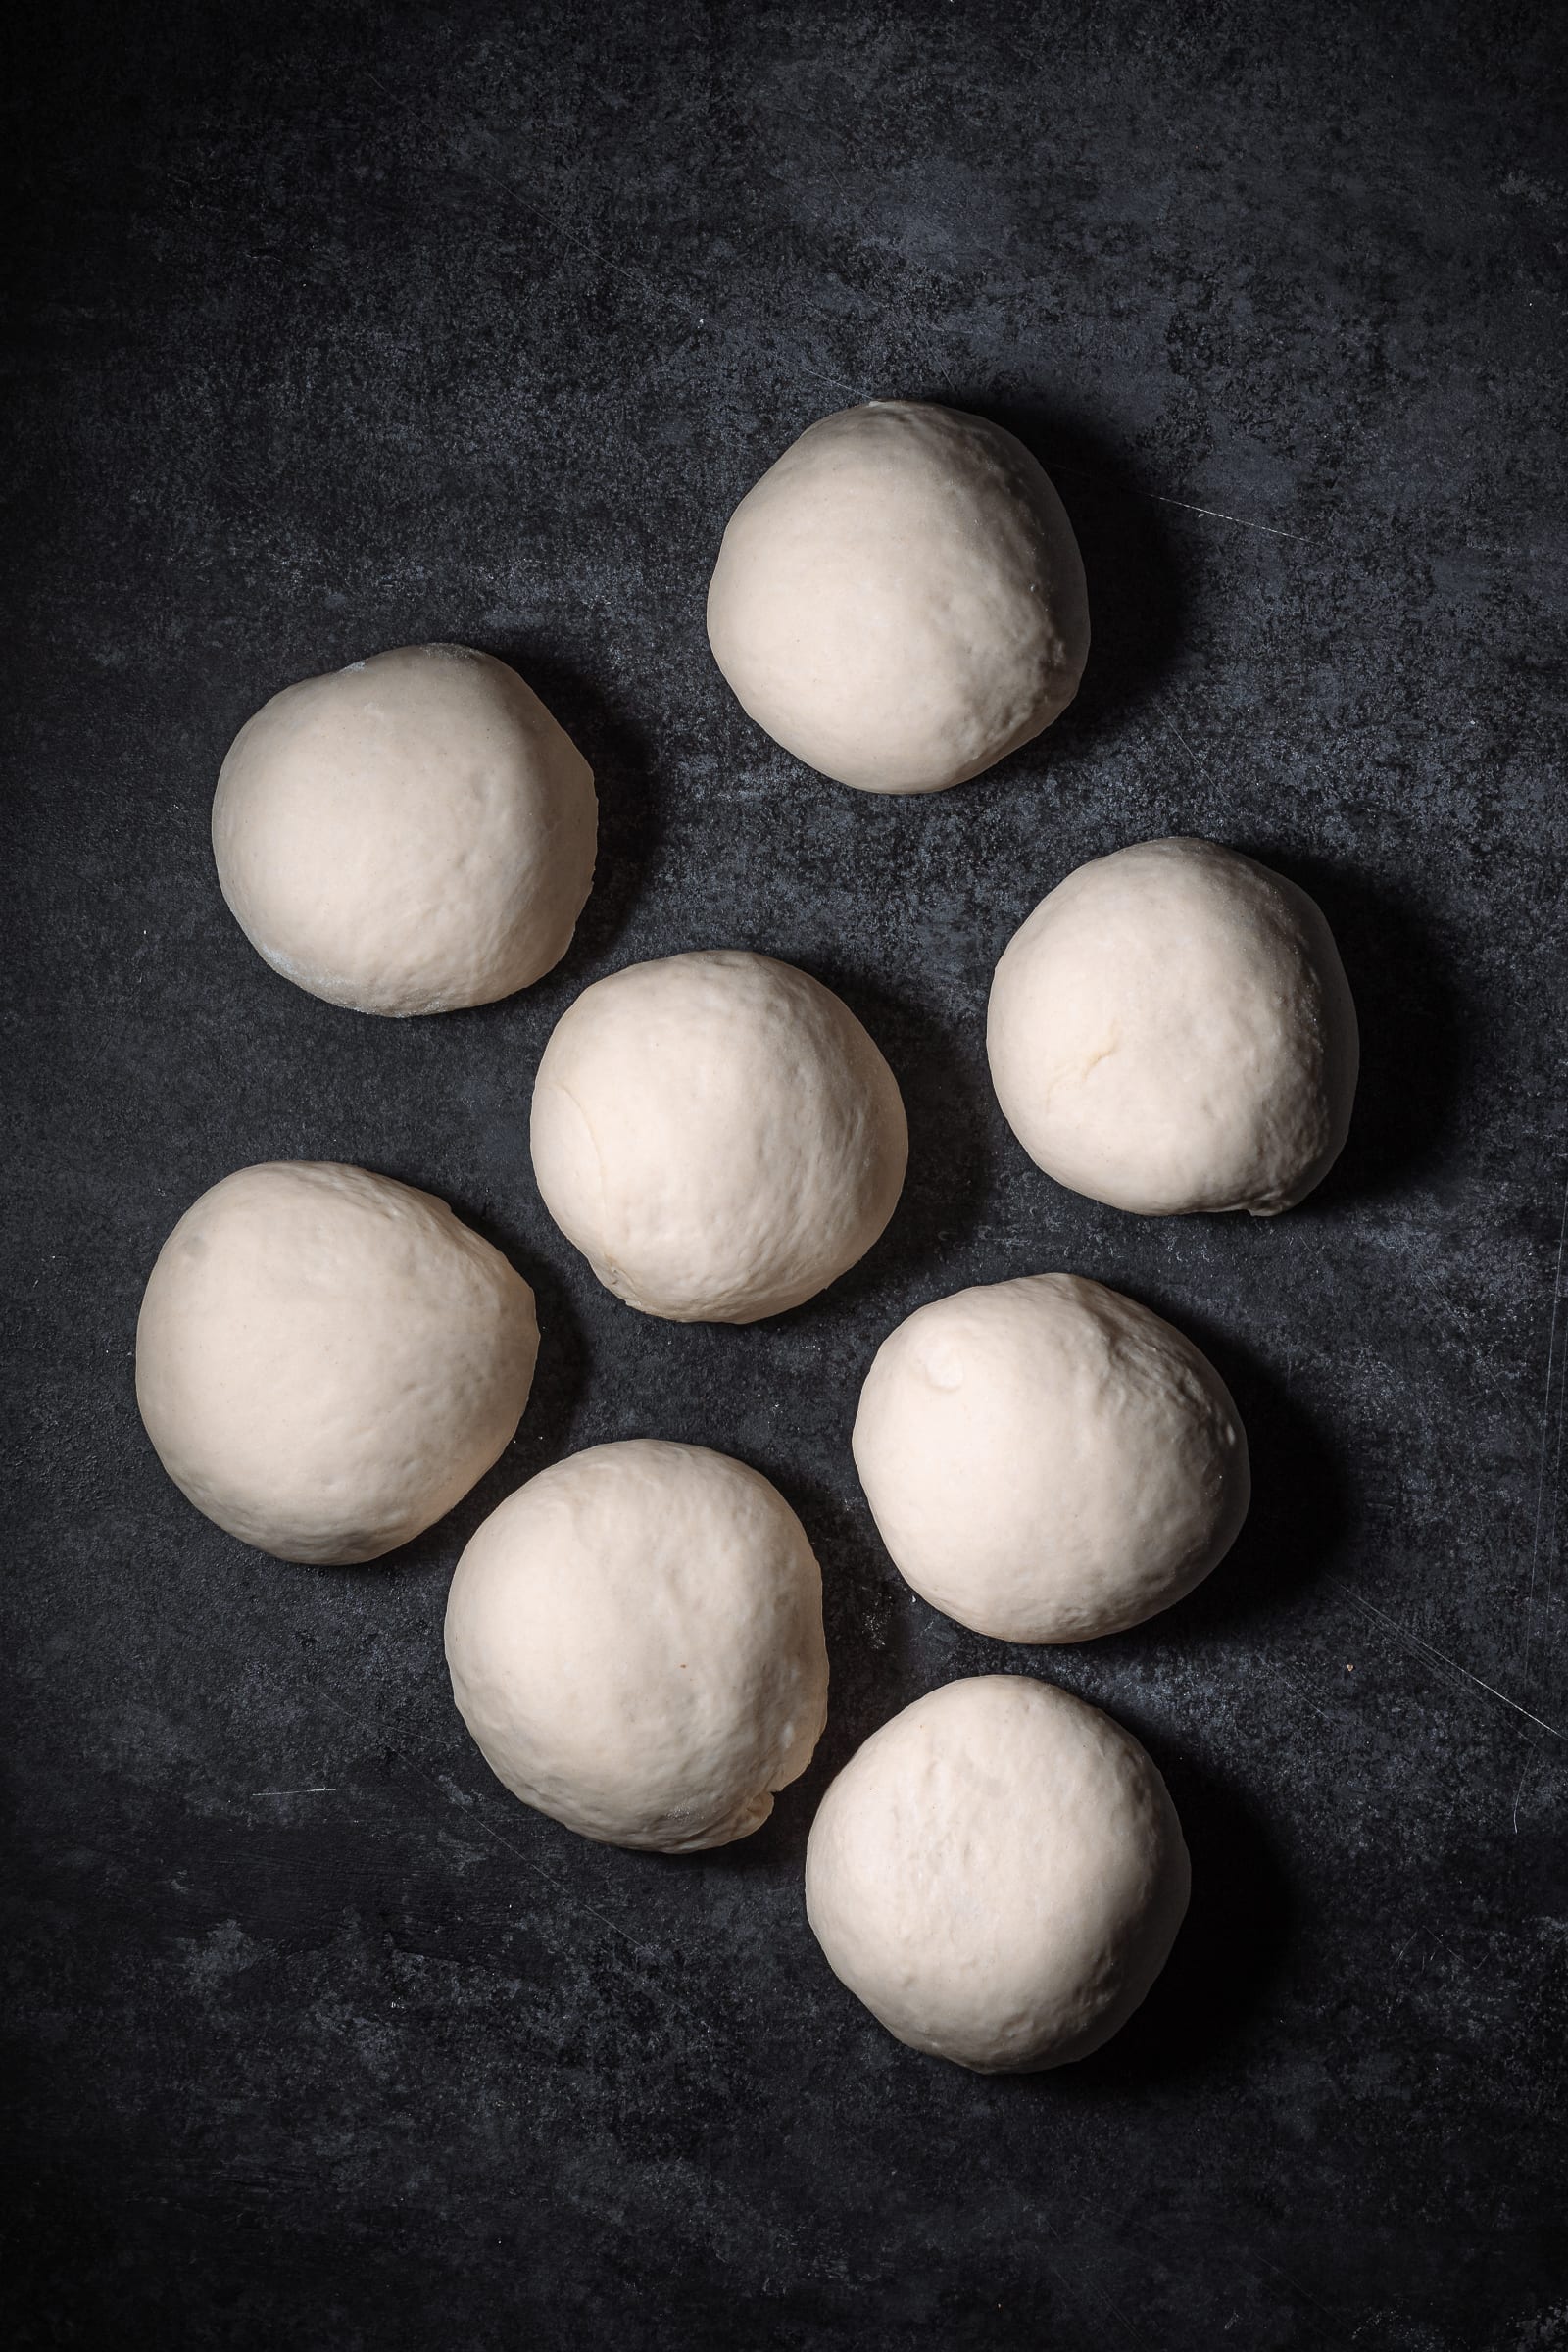 fluffy dough balls after rising.